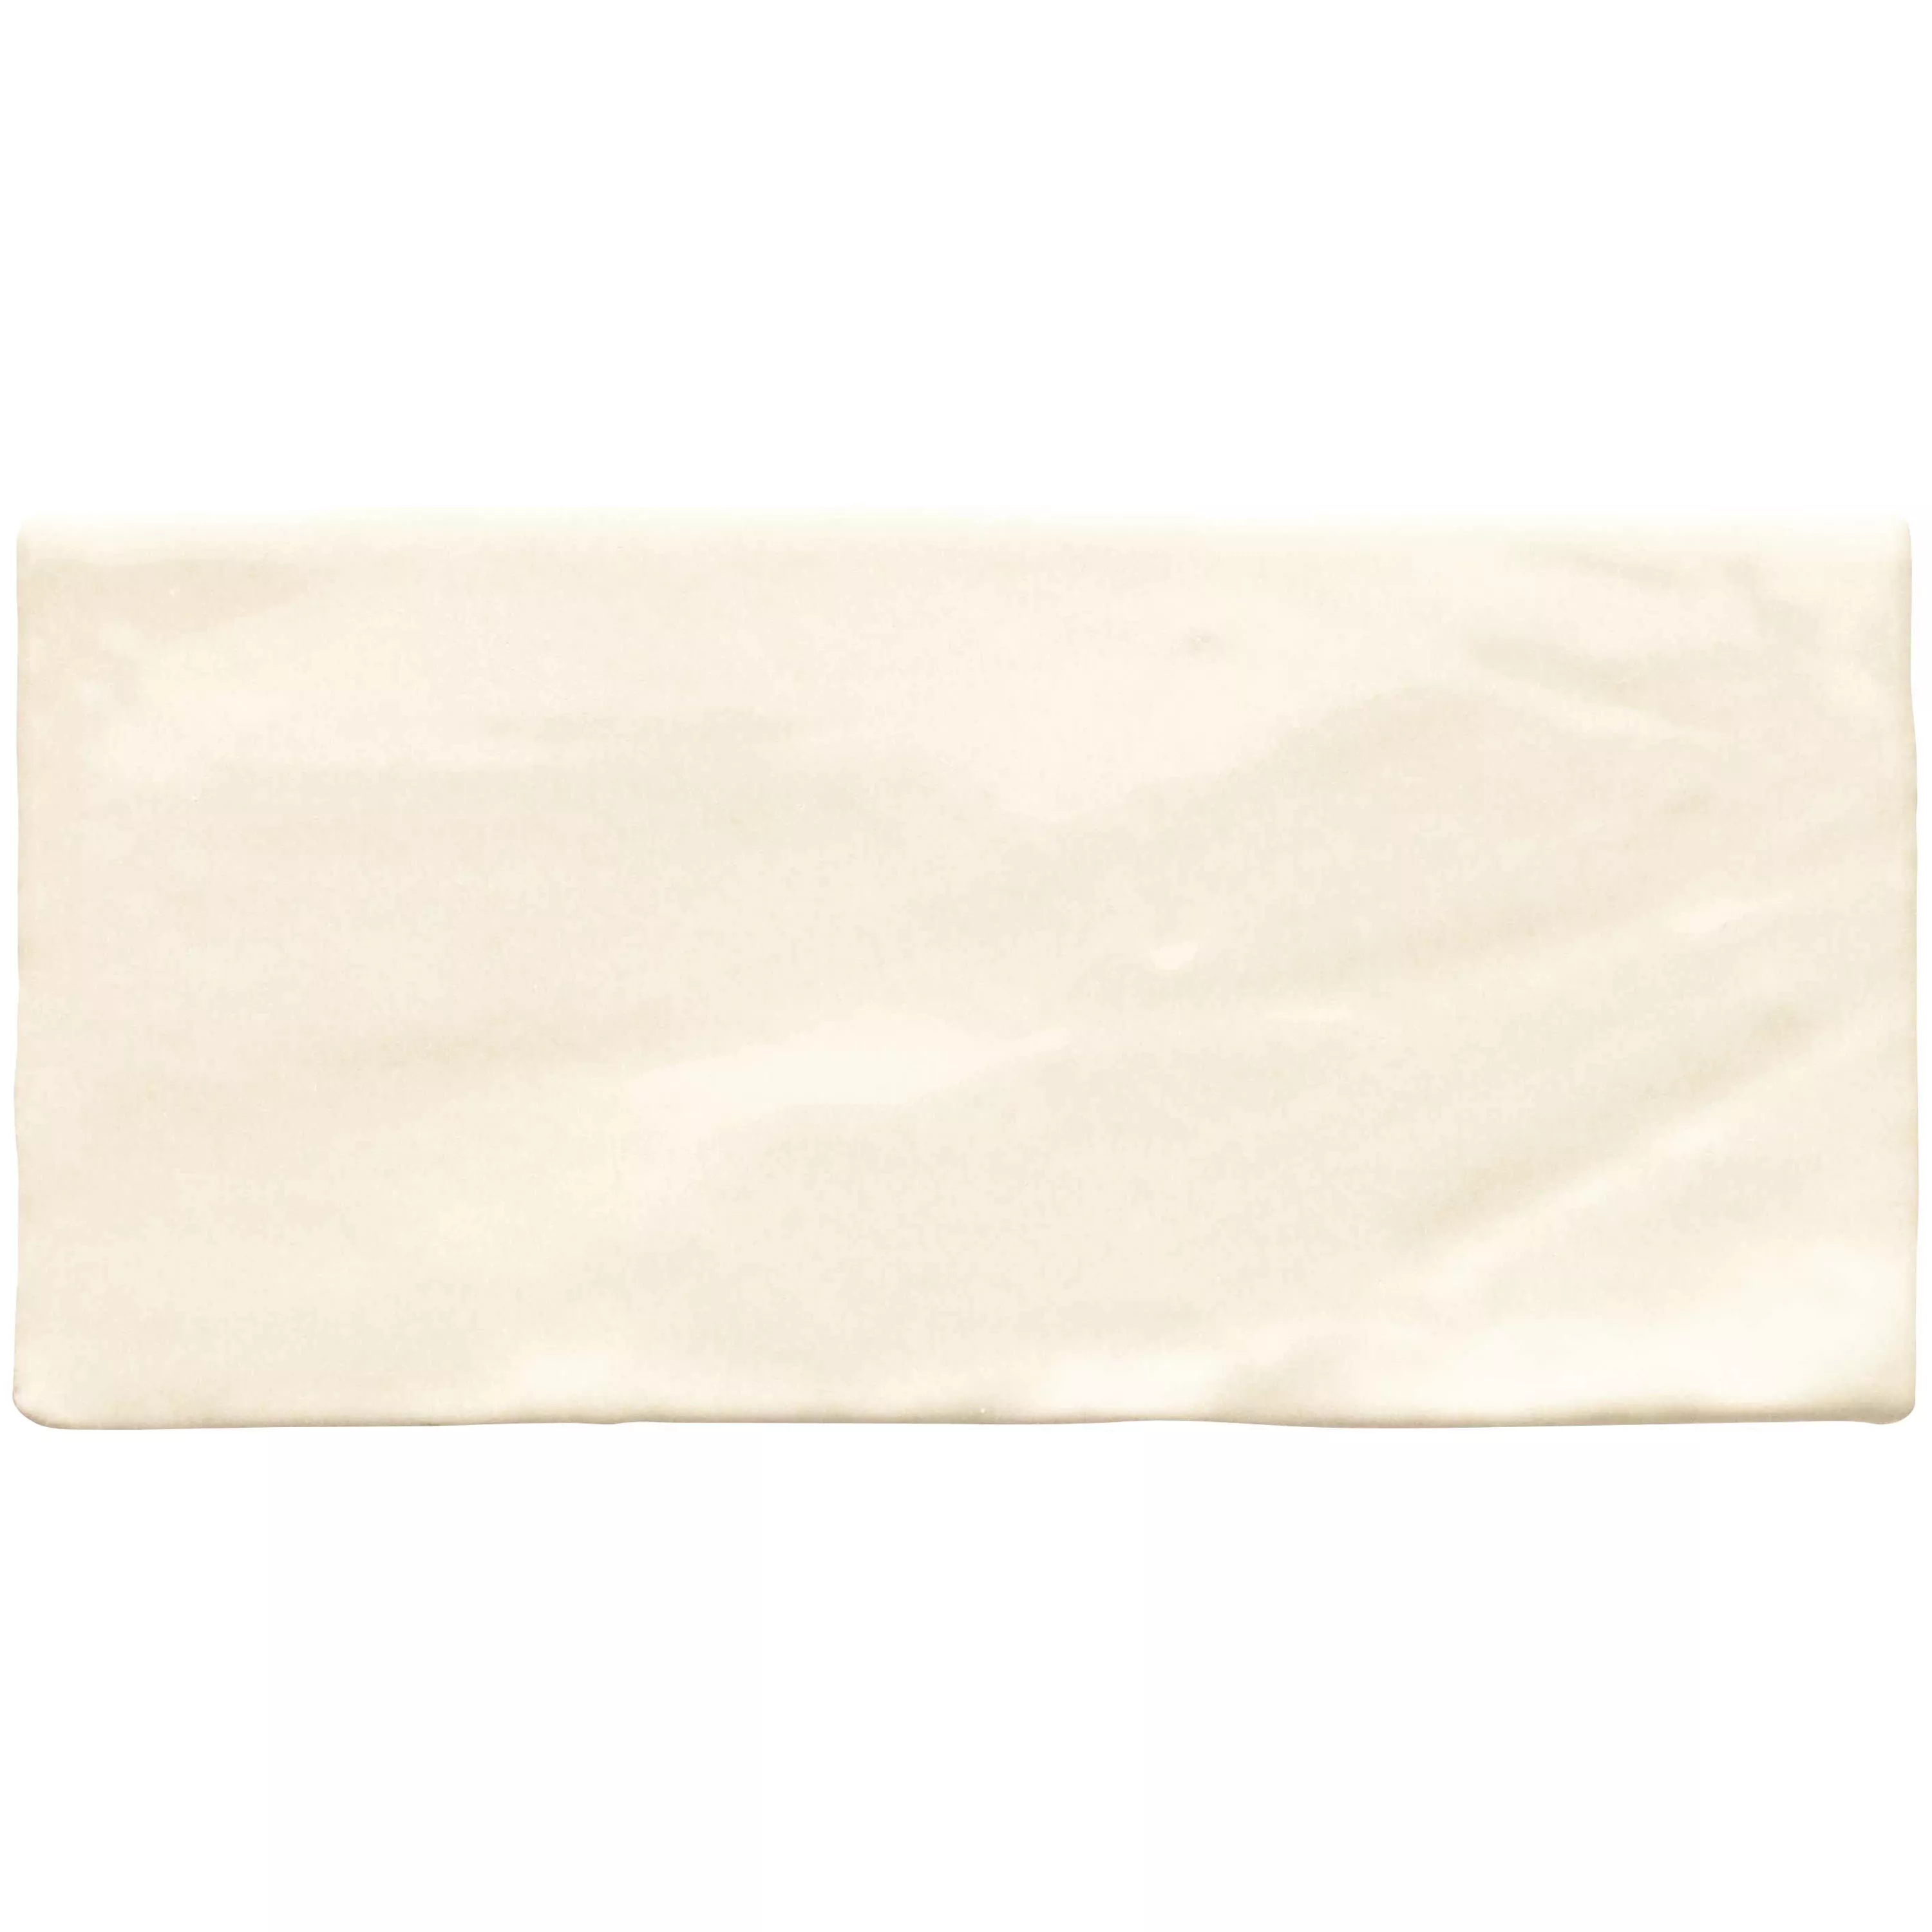 Próbka Płytki Ścienne Algier Wykonane Ręcznie 7,5x15cm Cream